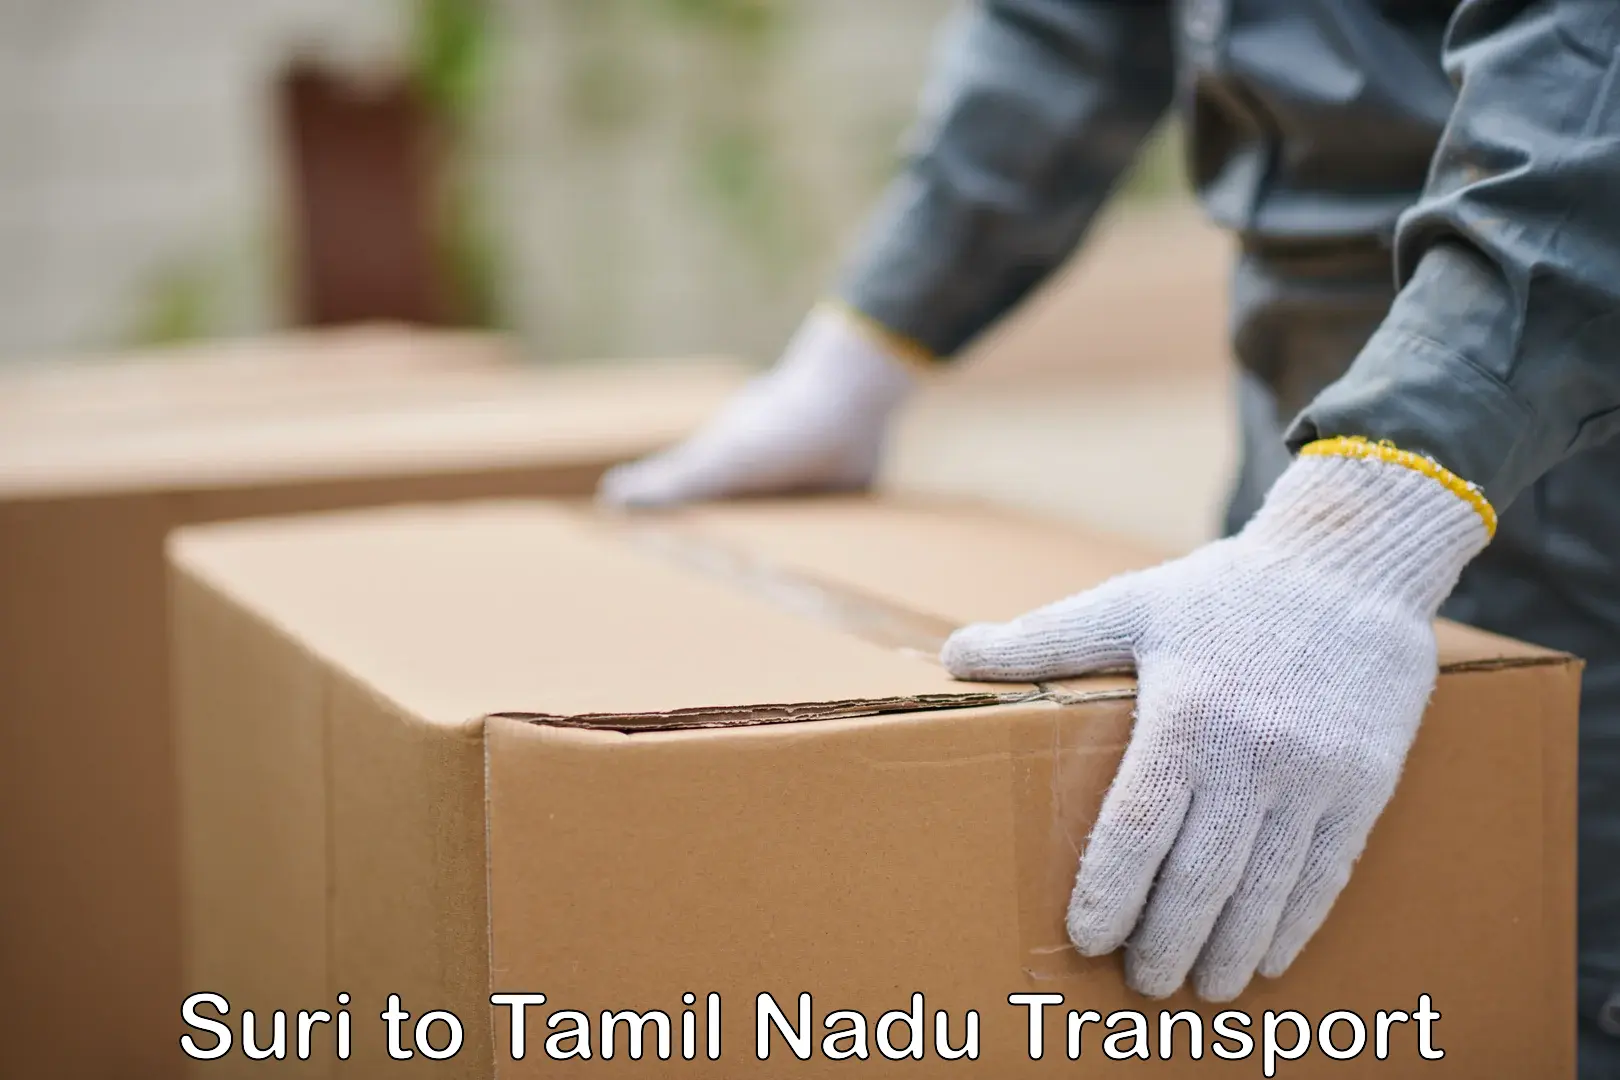 Door to door transport services Suri to Tamil Nadu